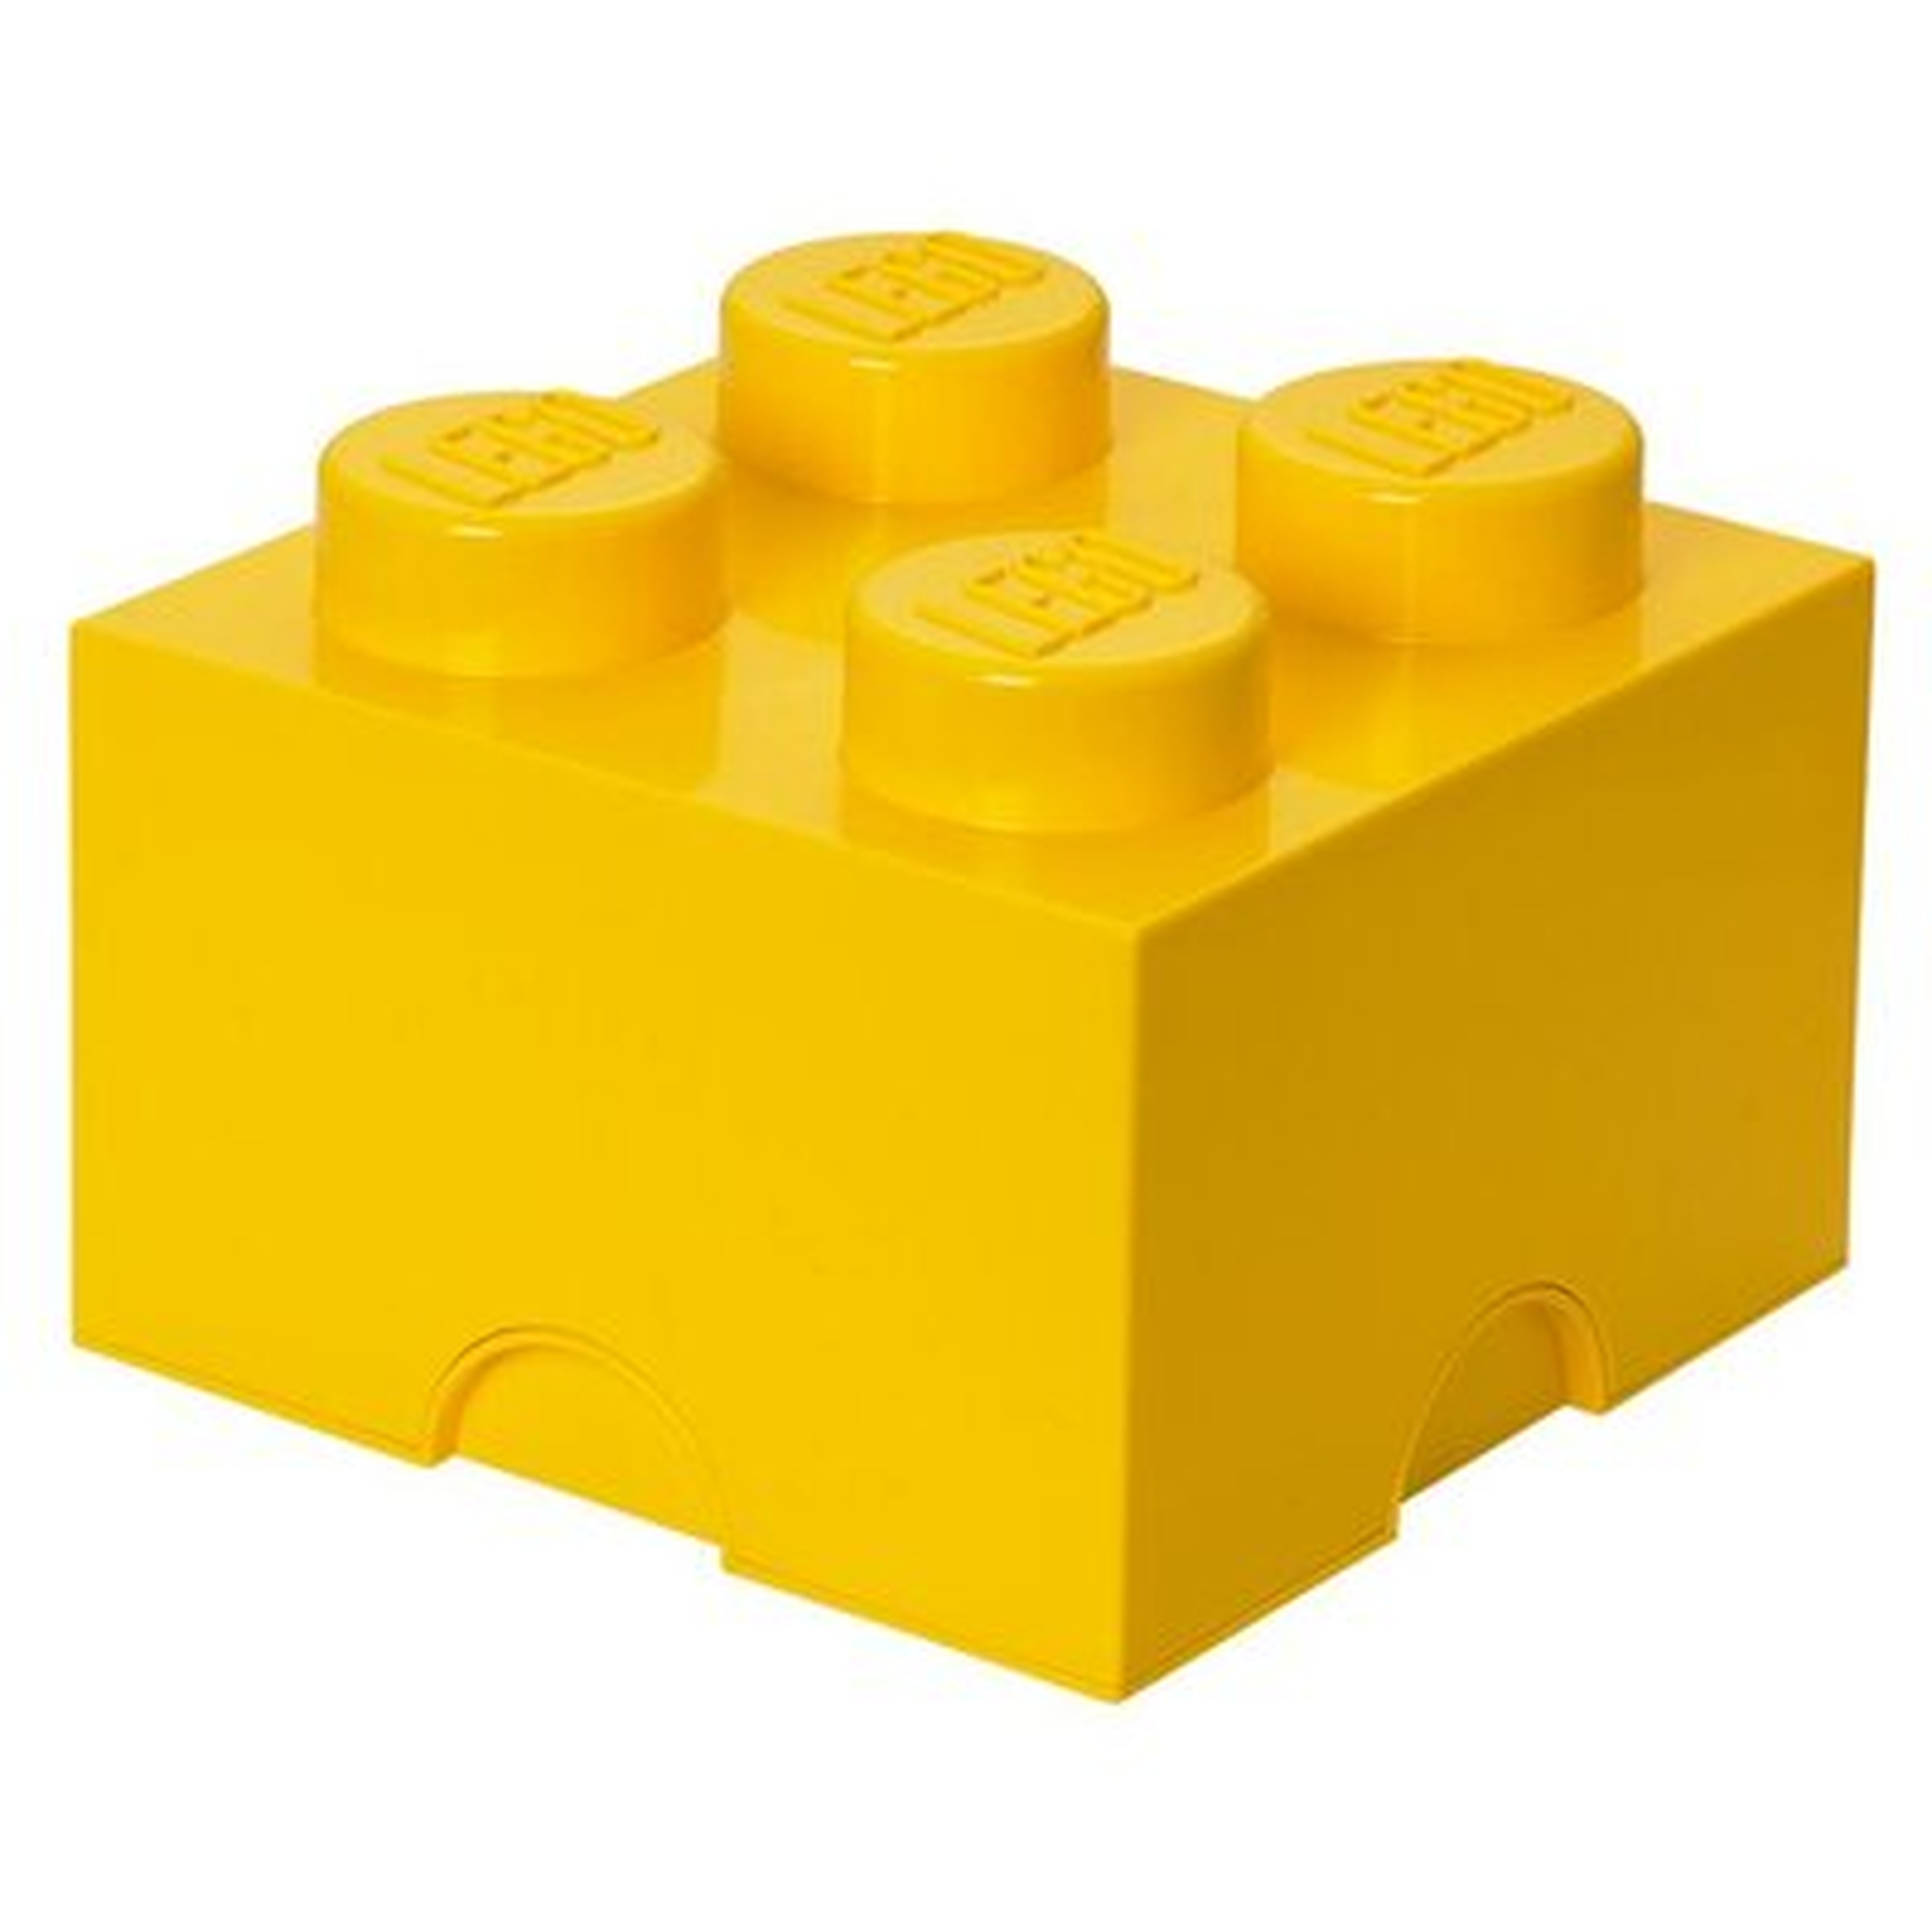 LEGO Storage Brick 4 Toy Box - Wayfair